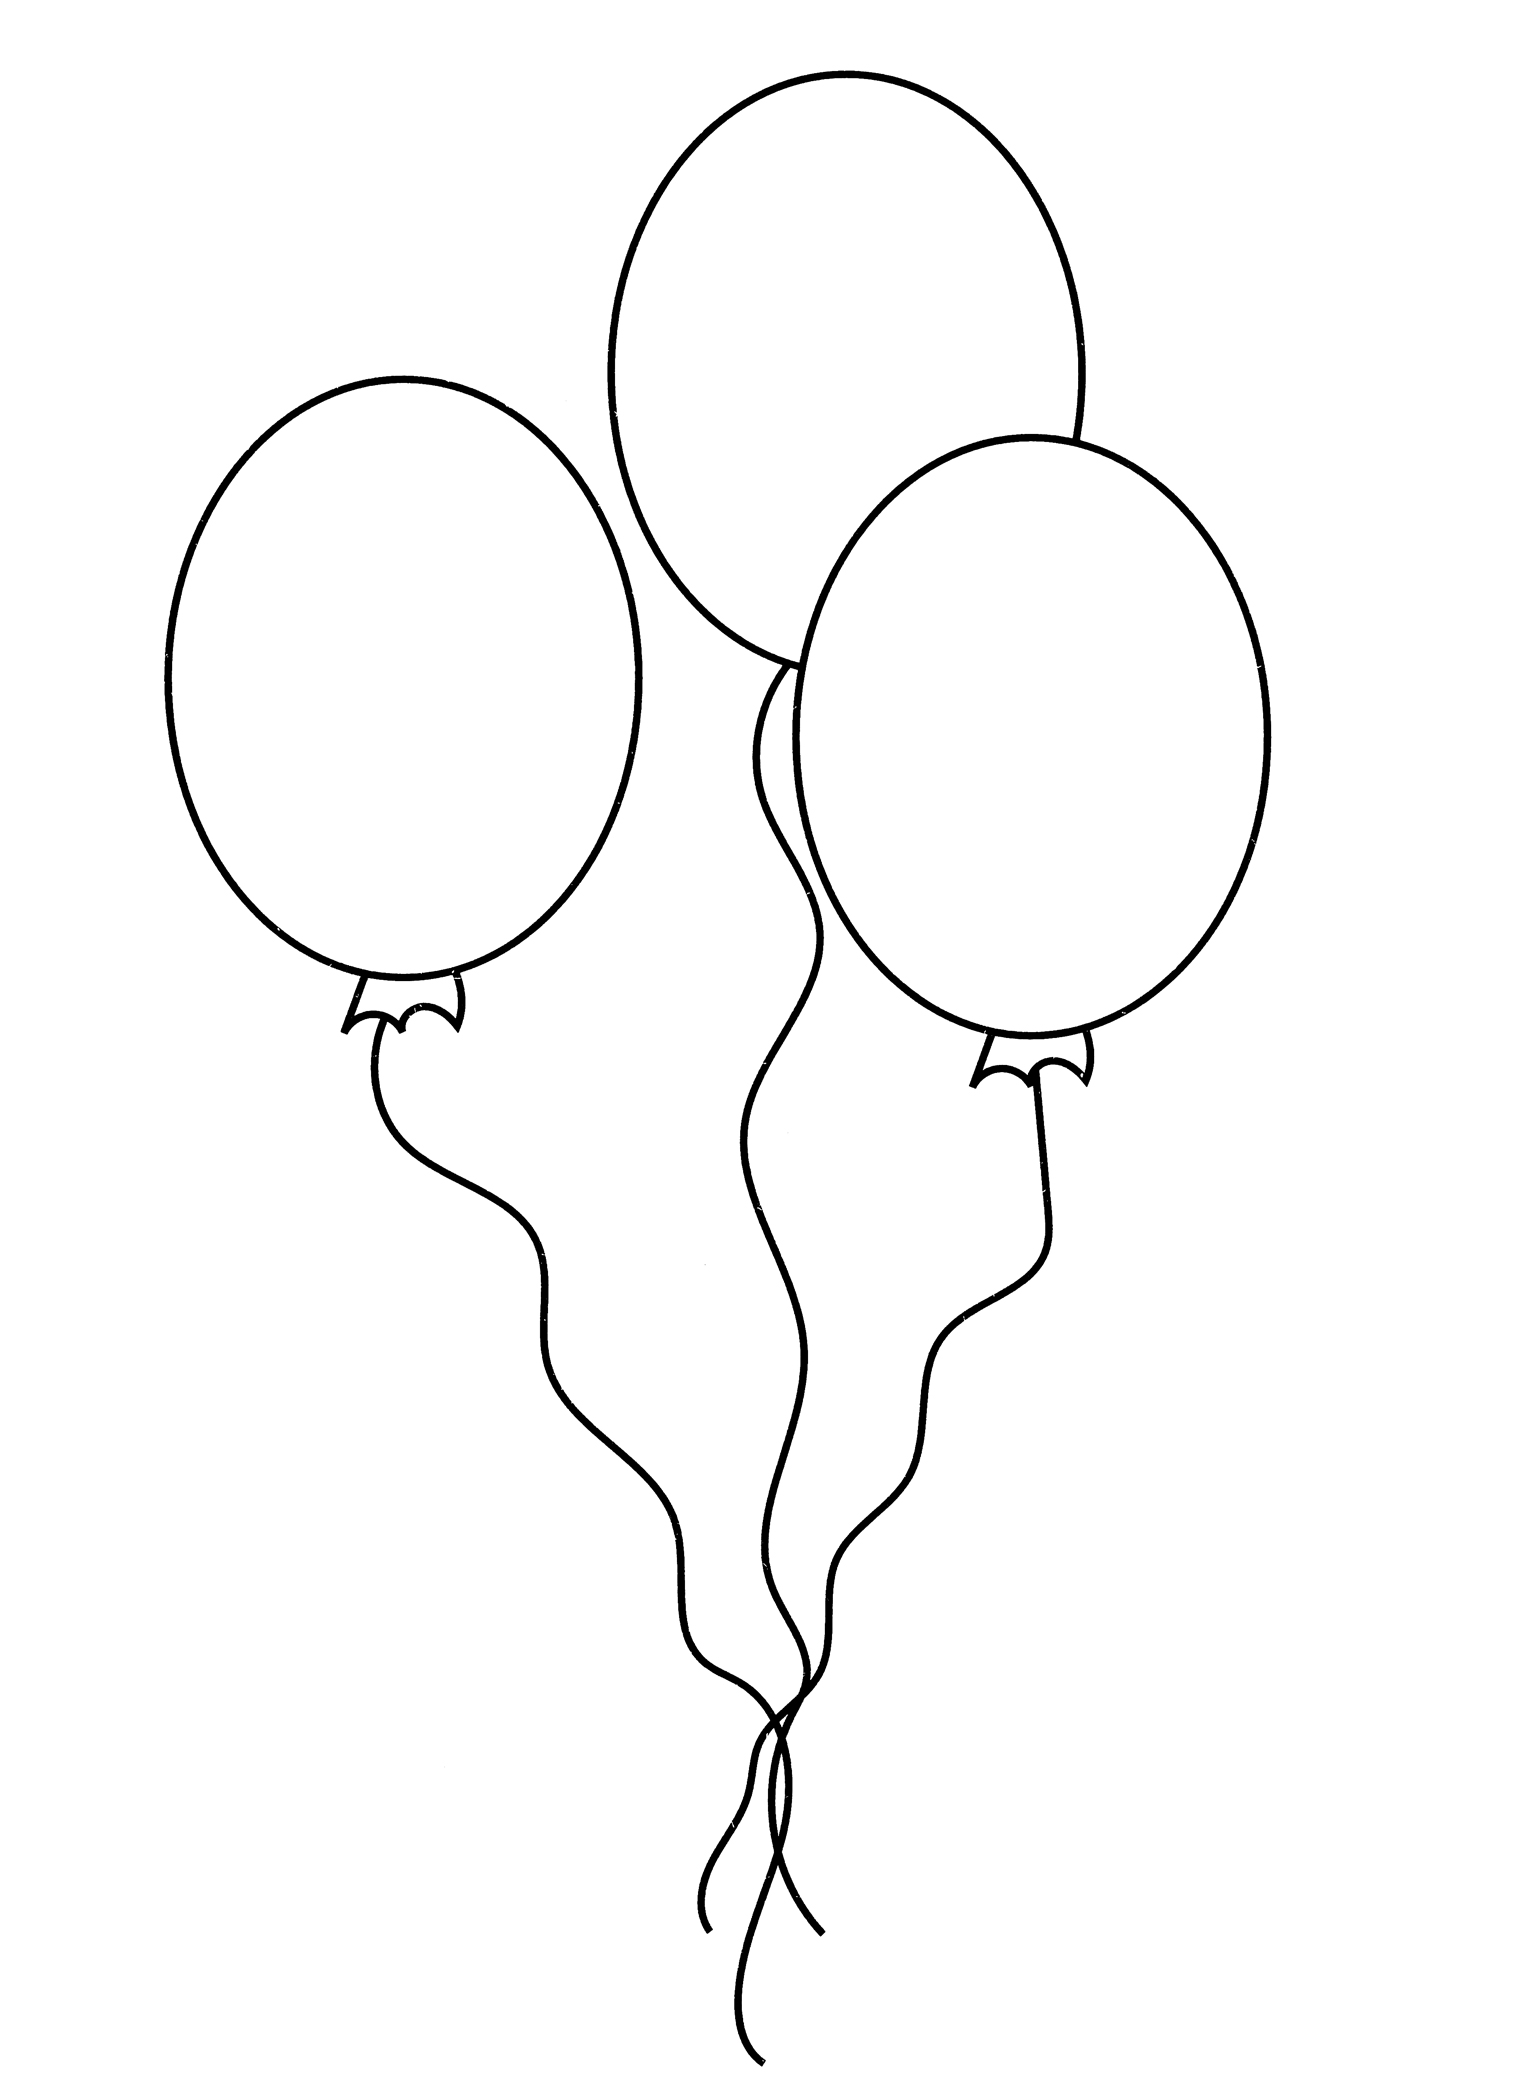 Раскраска Три воздушных шарика